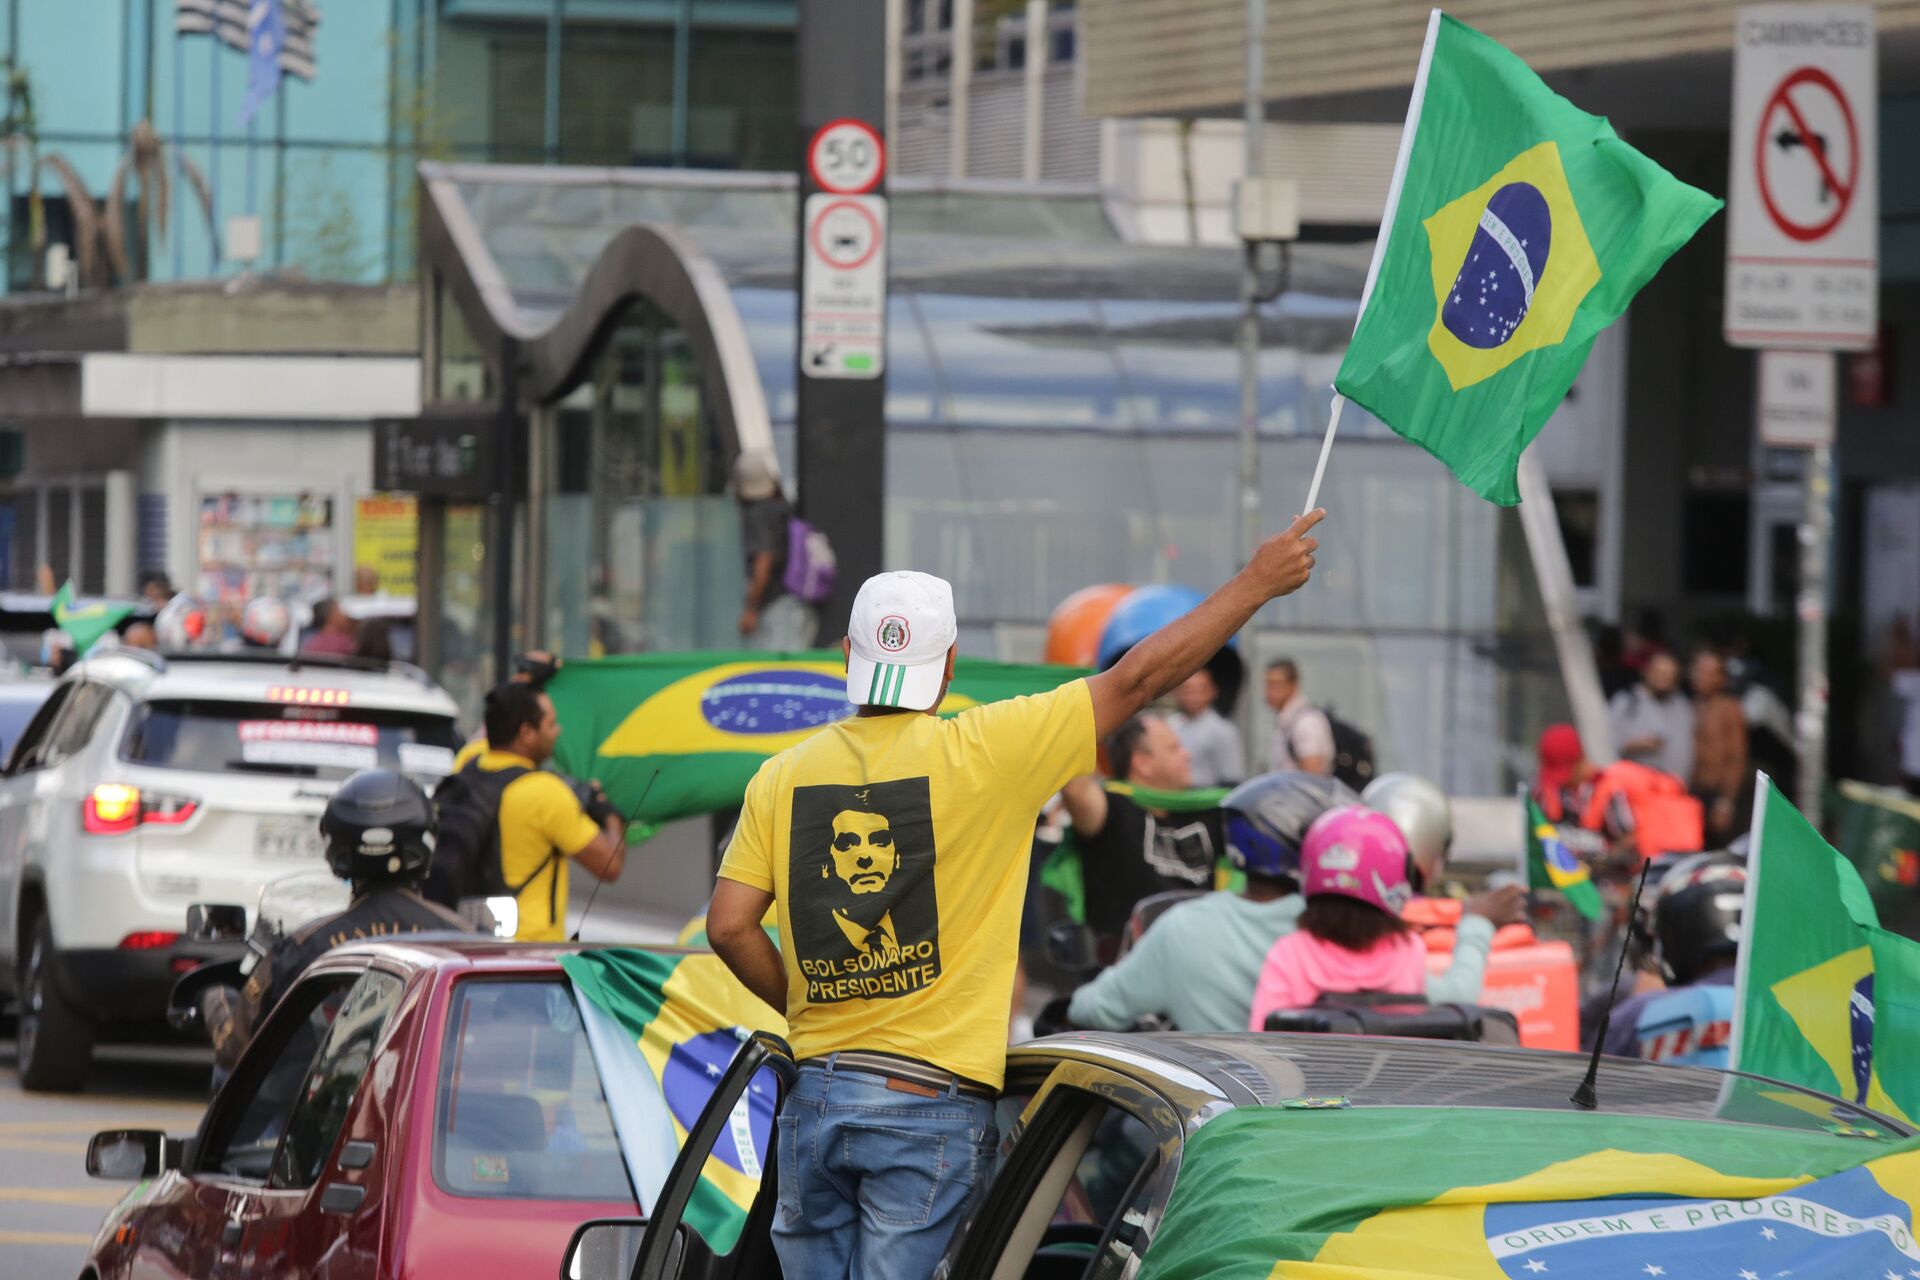 Ao propor ICMS fixo, Bolsonaro 'não se importa em criar problemas' para o Brasil, diz especialista - Sputnik Brasil, 1920, 08.02.2021